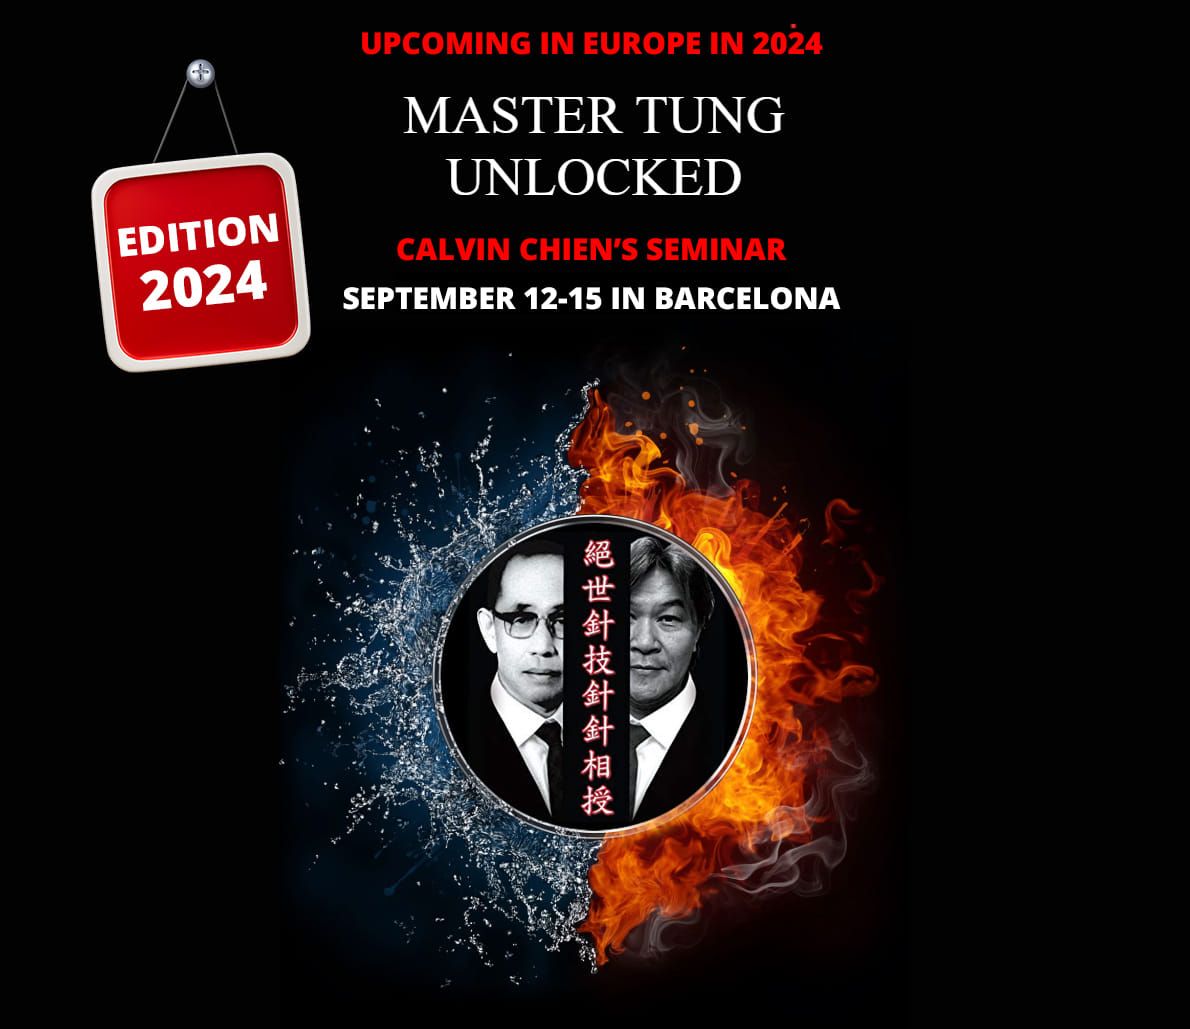 Master Tung Unlocked seminar in Barcelona